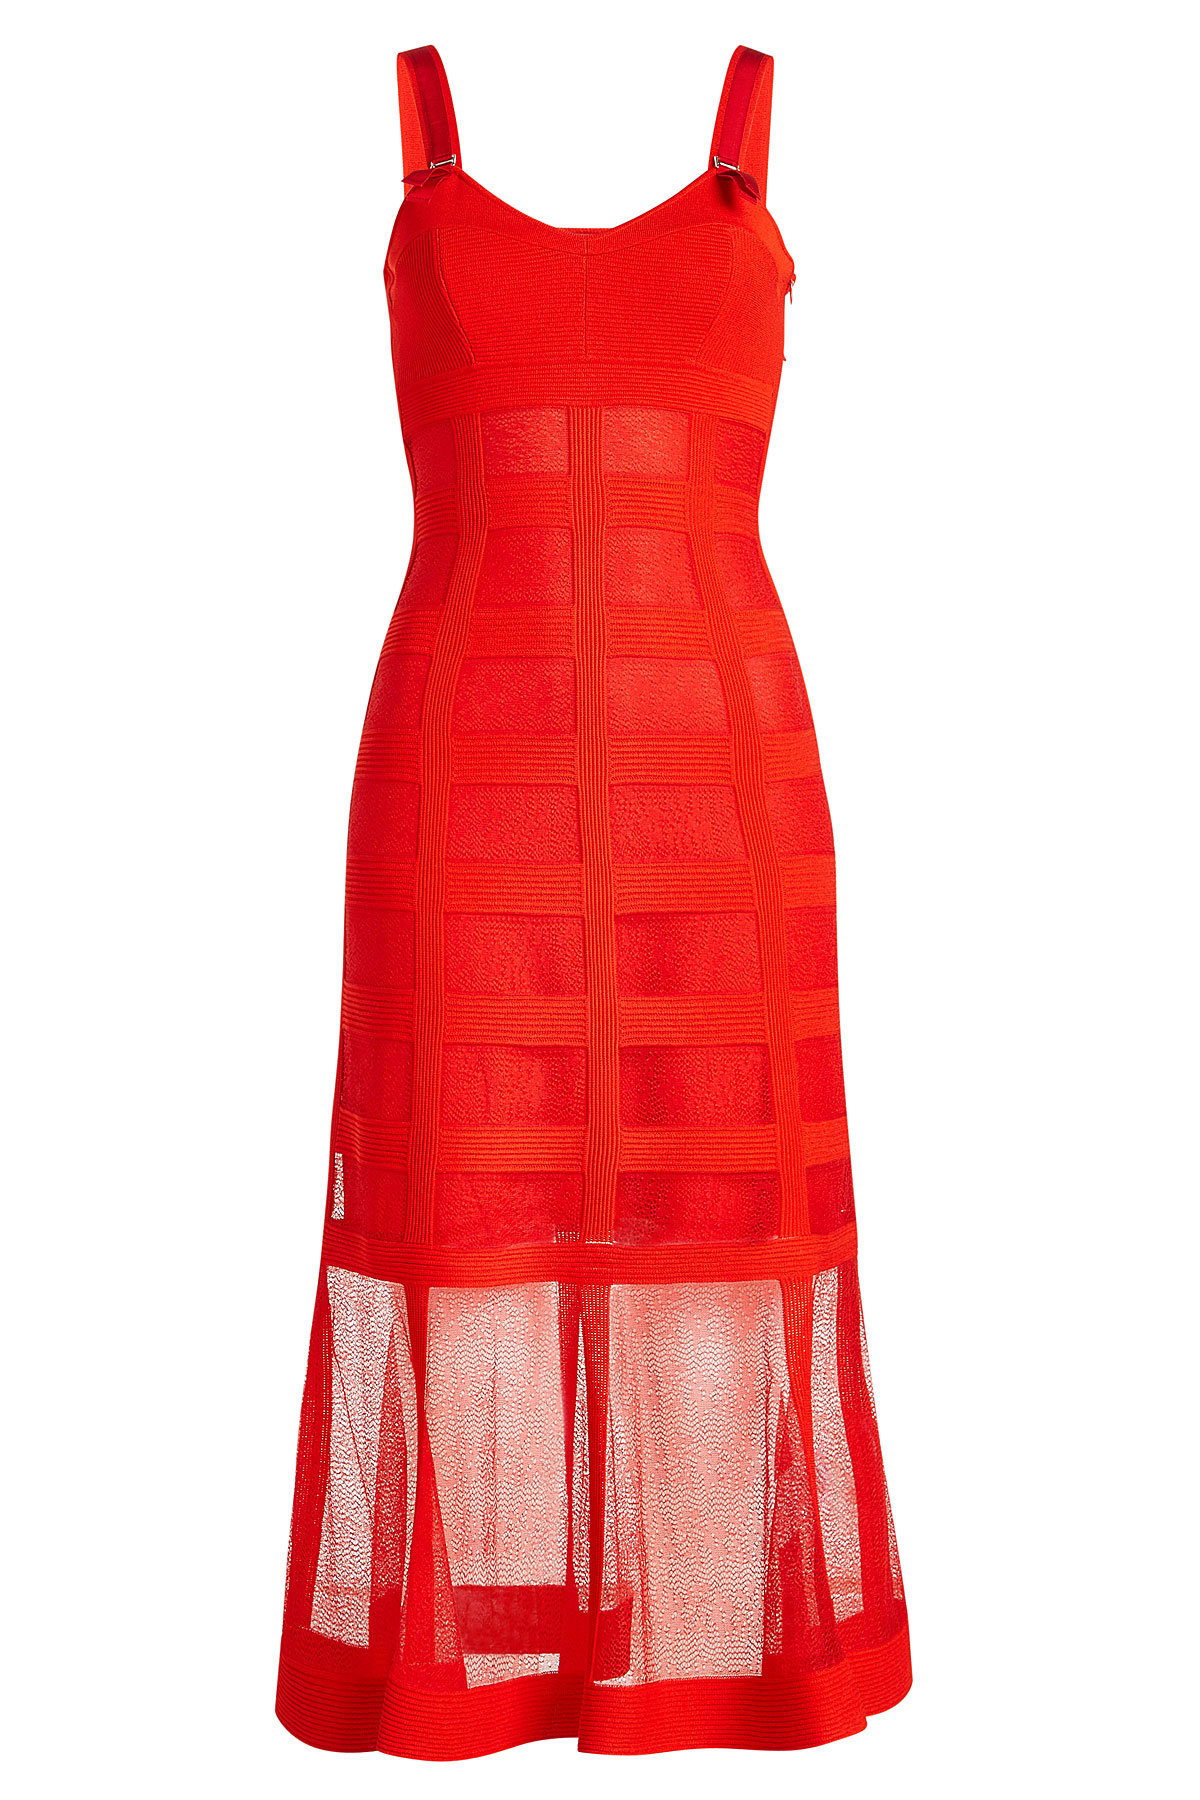 Alexander McQueen - Silk Dress with Sheer Skirt